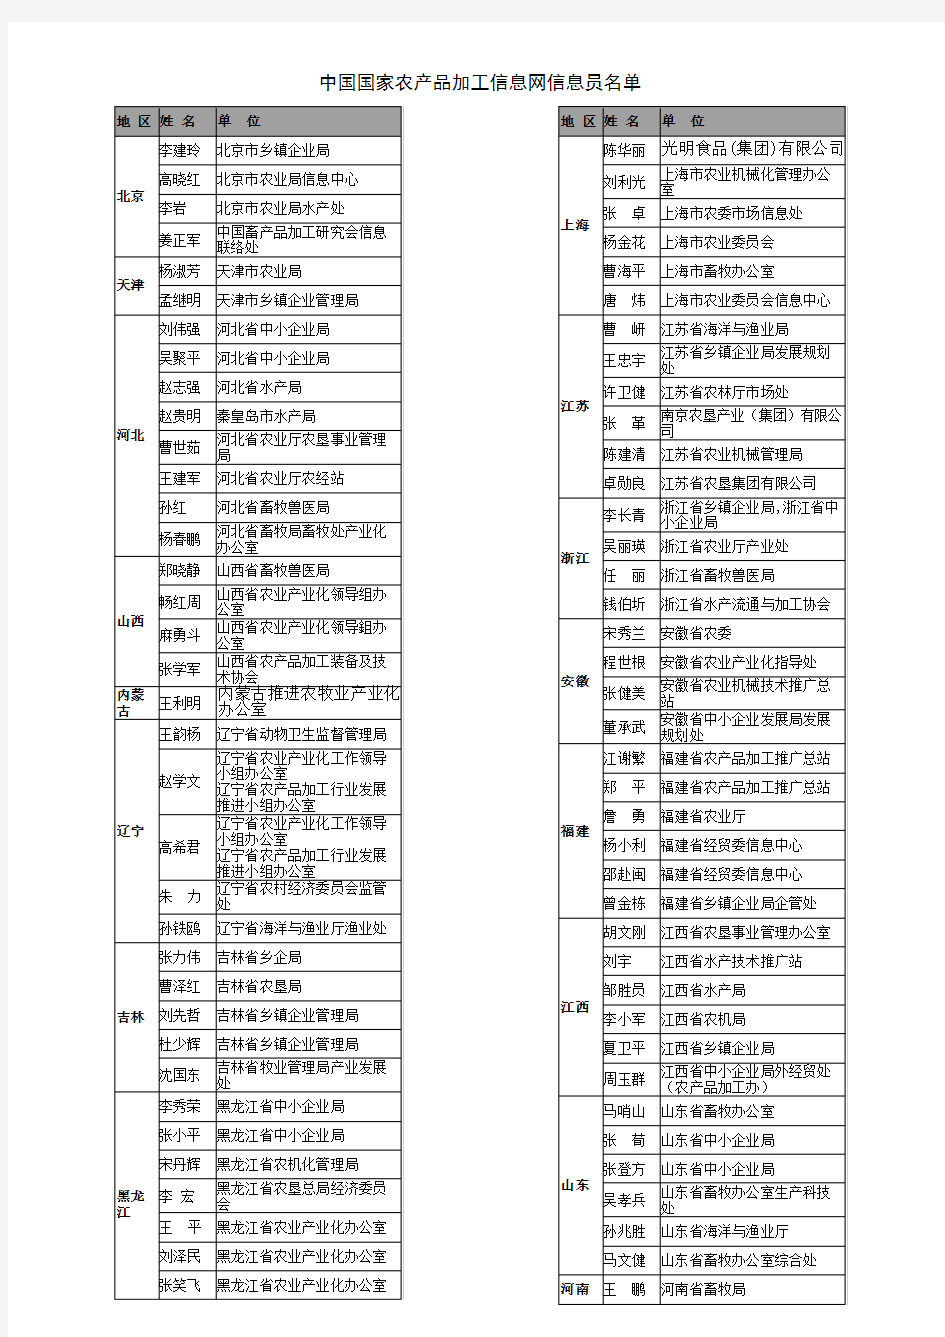 中国国家农产品加工信息网信息员名单